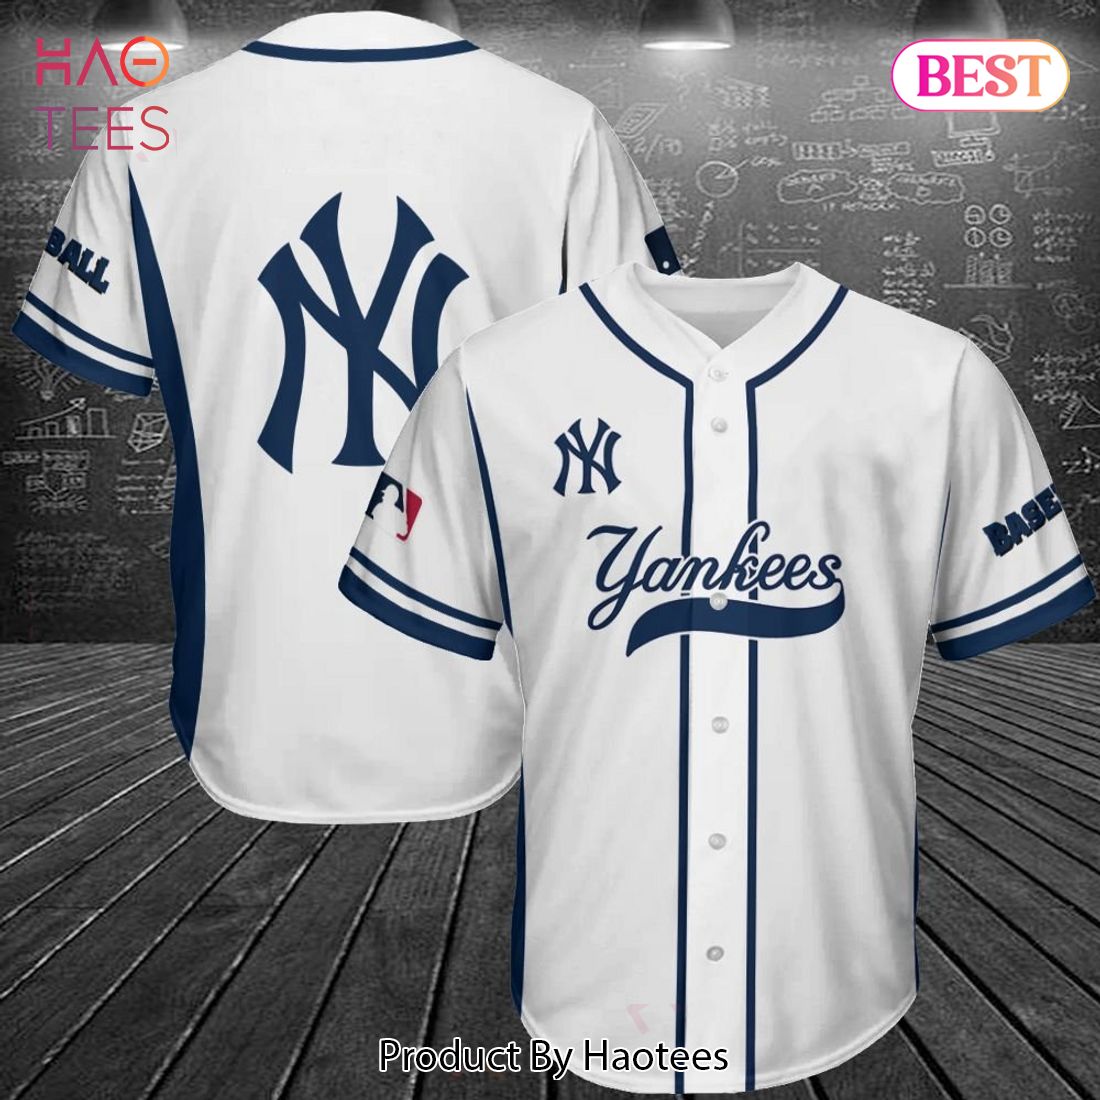 New York Yankees T-Shirt, Yankees Shirts, Yankees Baseball Shirts